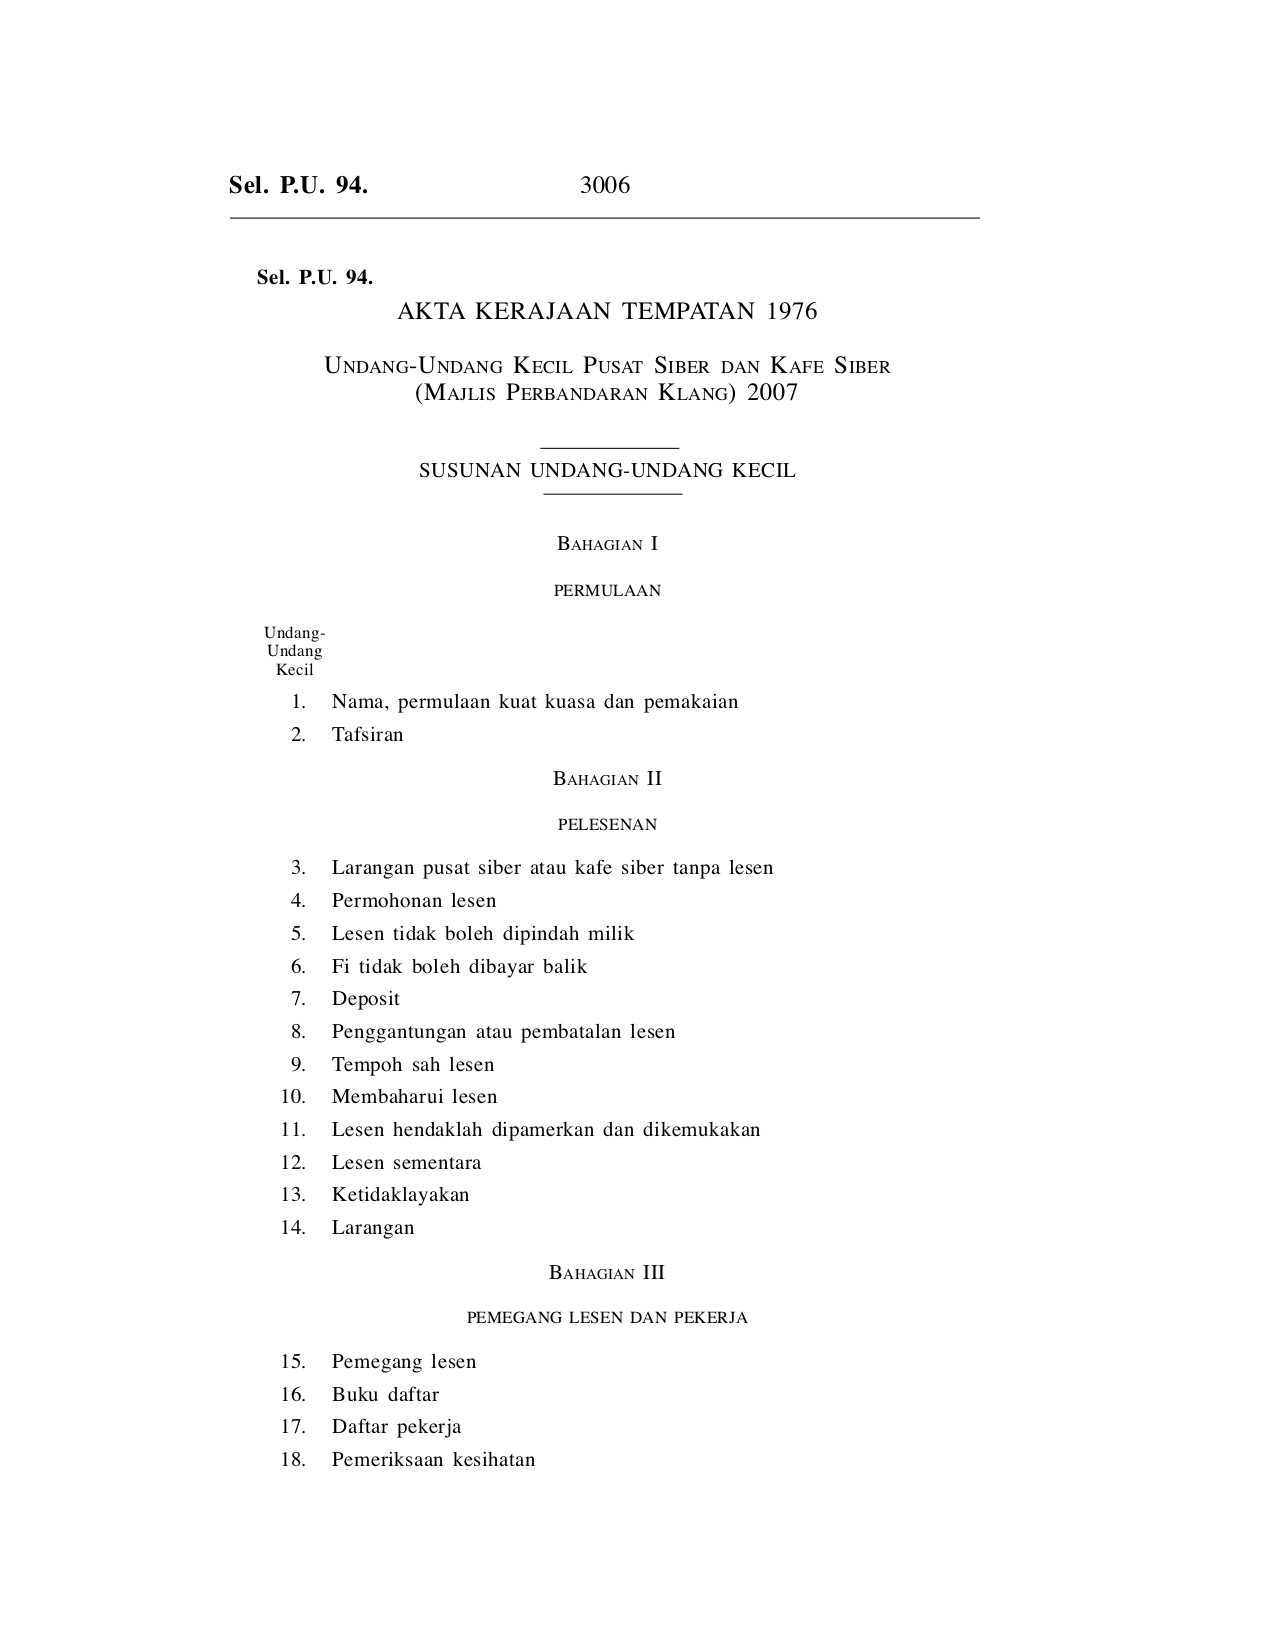 Undang-Undang Kecil Pusat Siber Dan Kafe Siber (Majlis Perbandaran Klang) 2007 - Akta Kerajaan Tempatan 1976